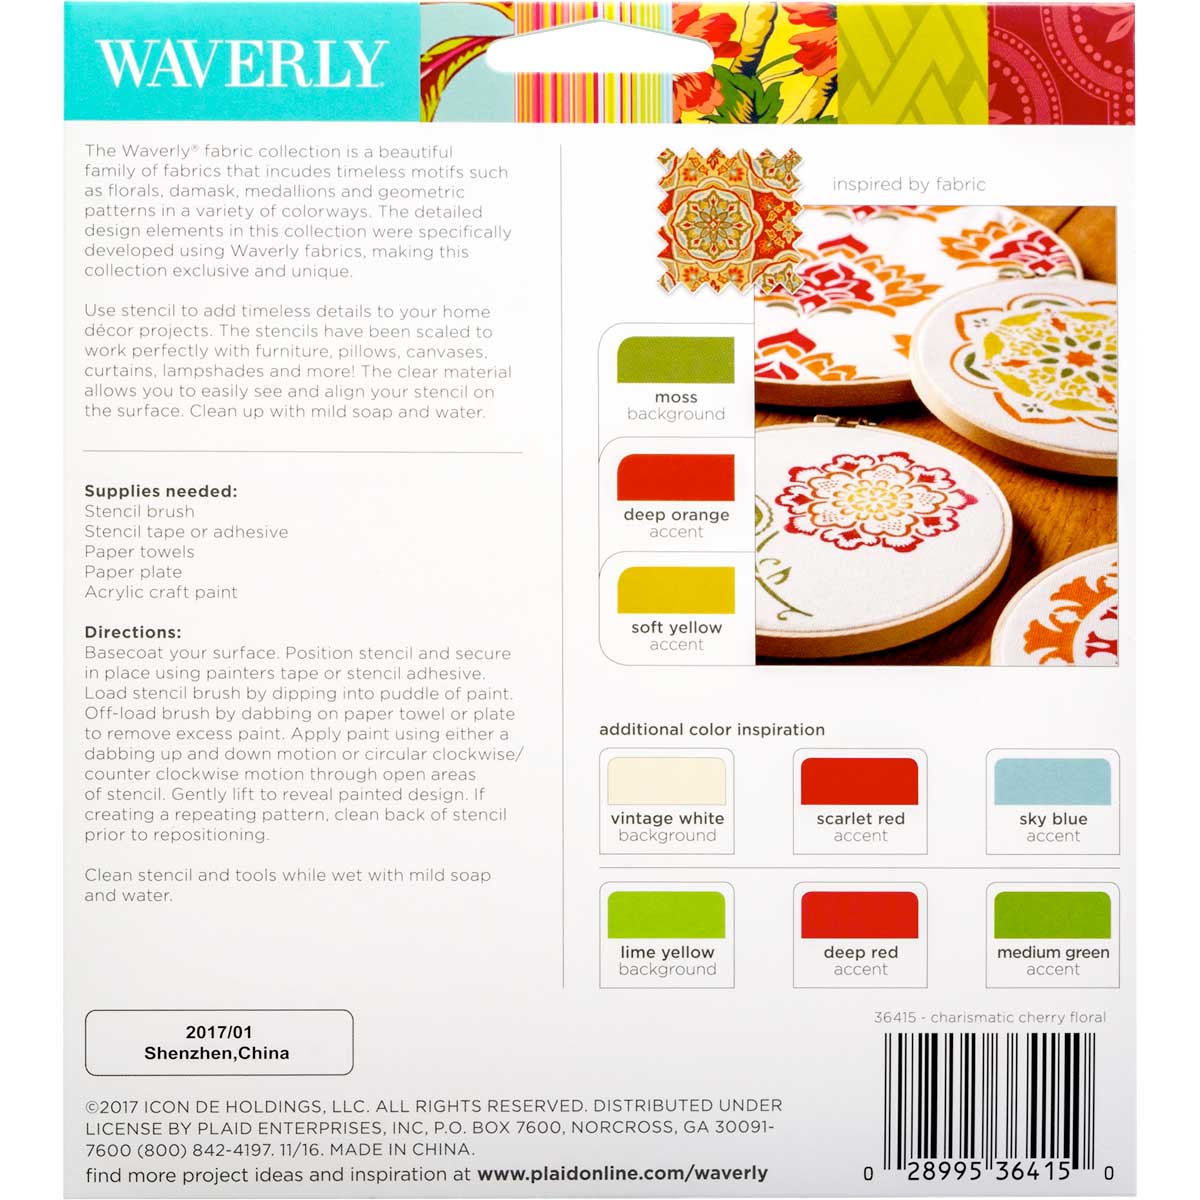 Waverly ® Laser Stencils - Cherry Floral, 5.5